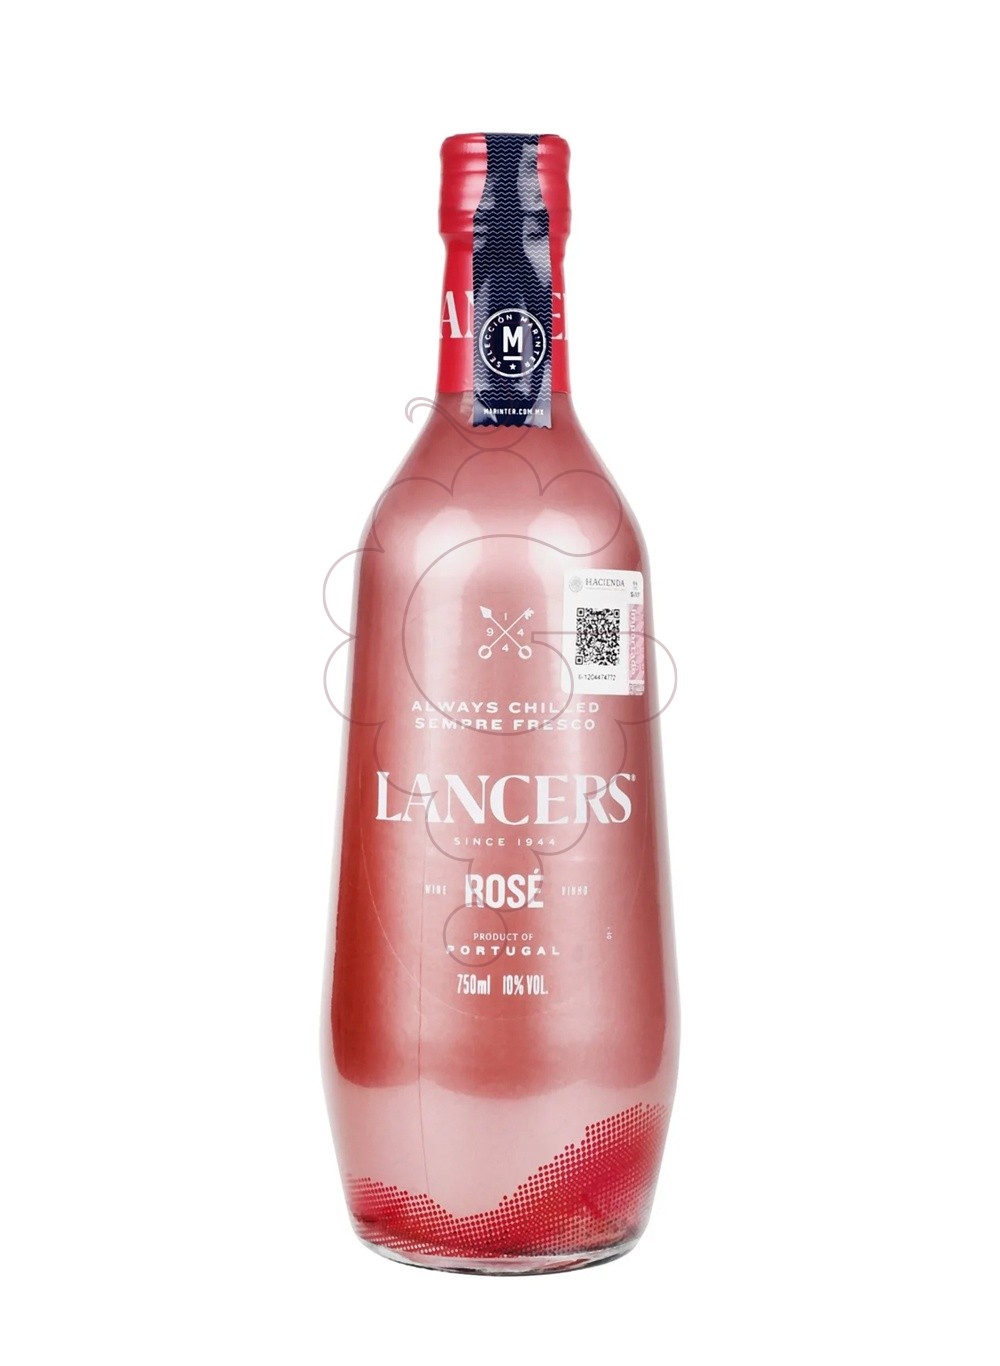 Foto Lancers Rose vino espumoso